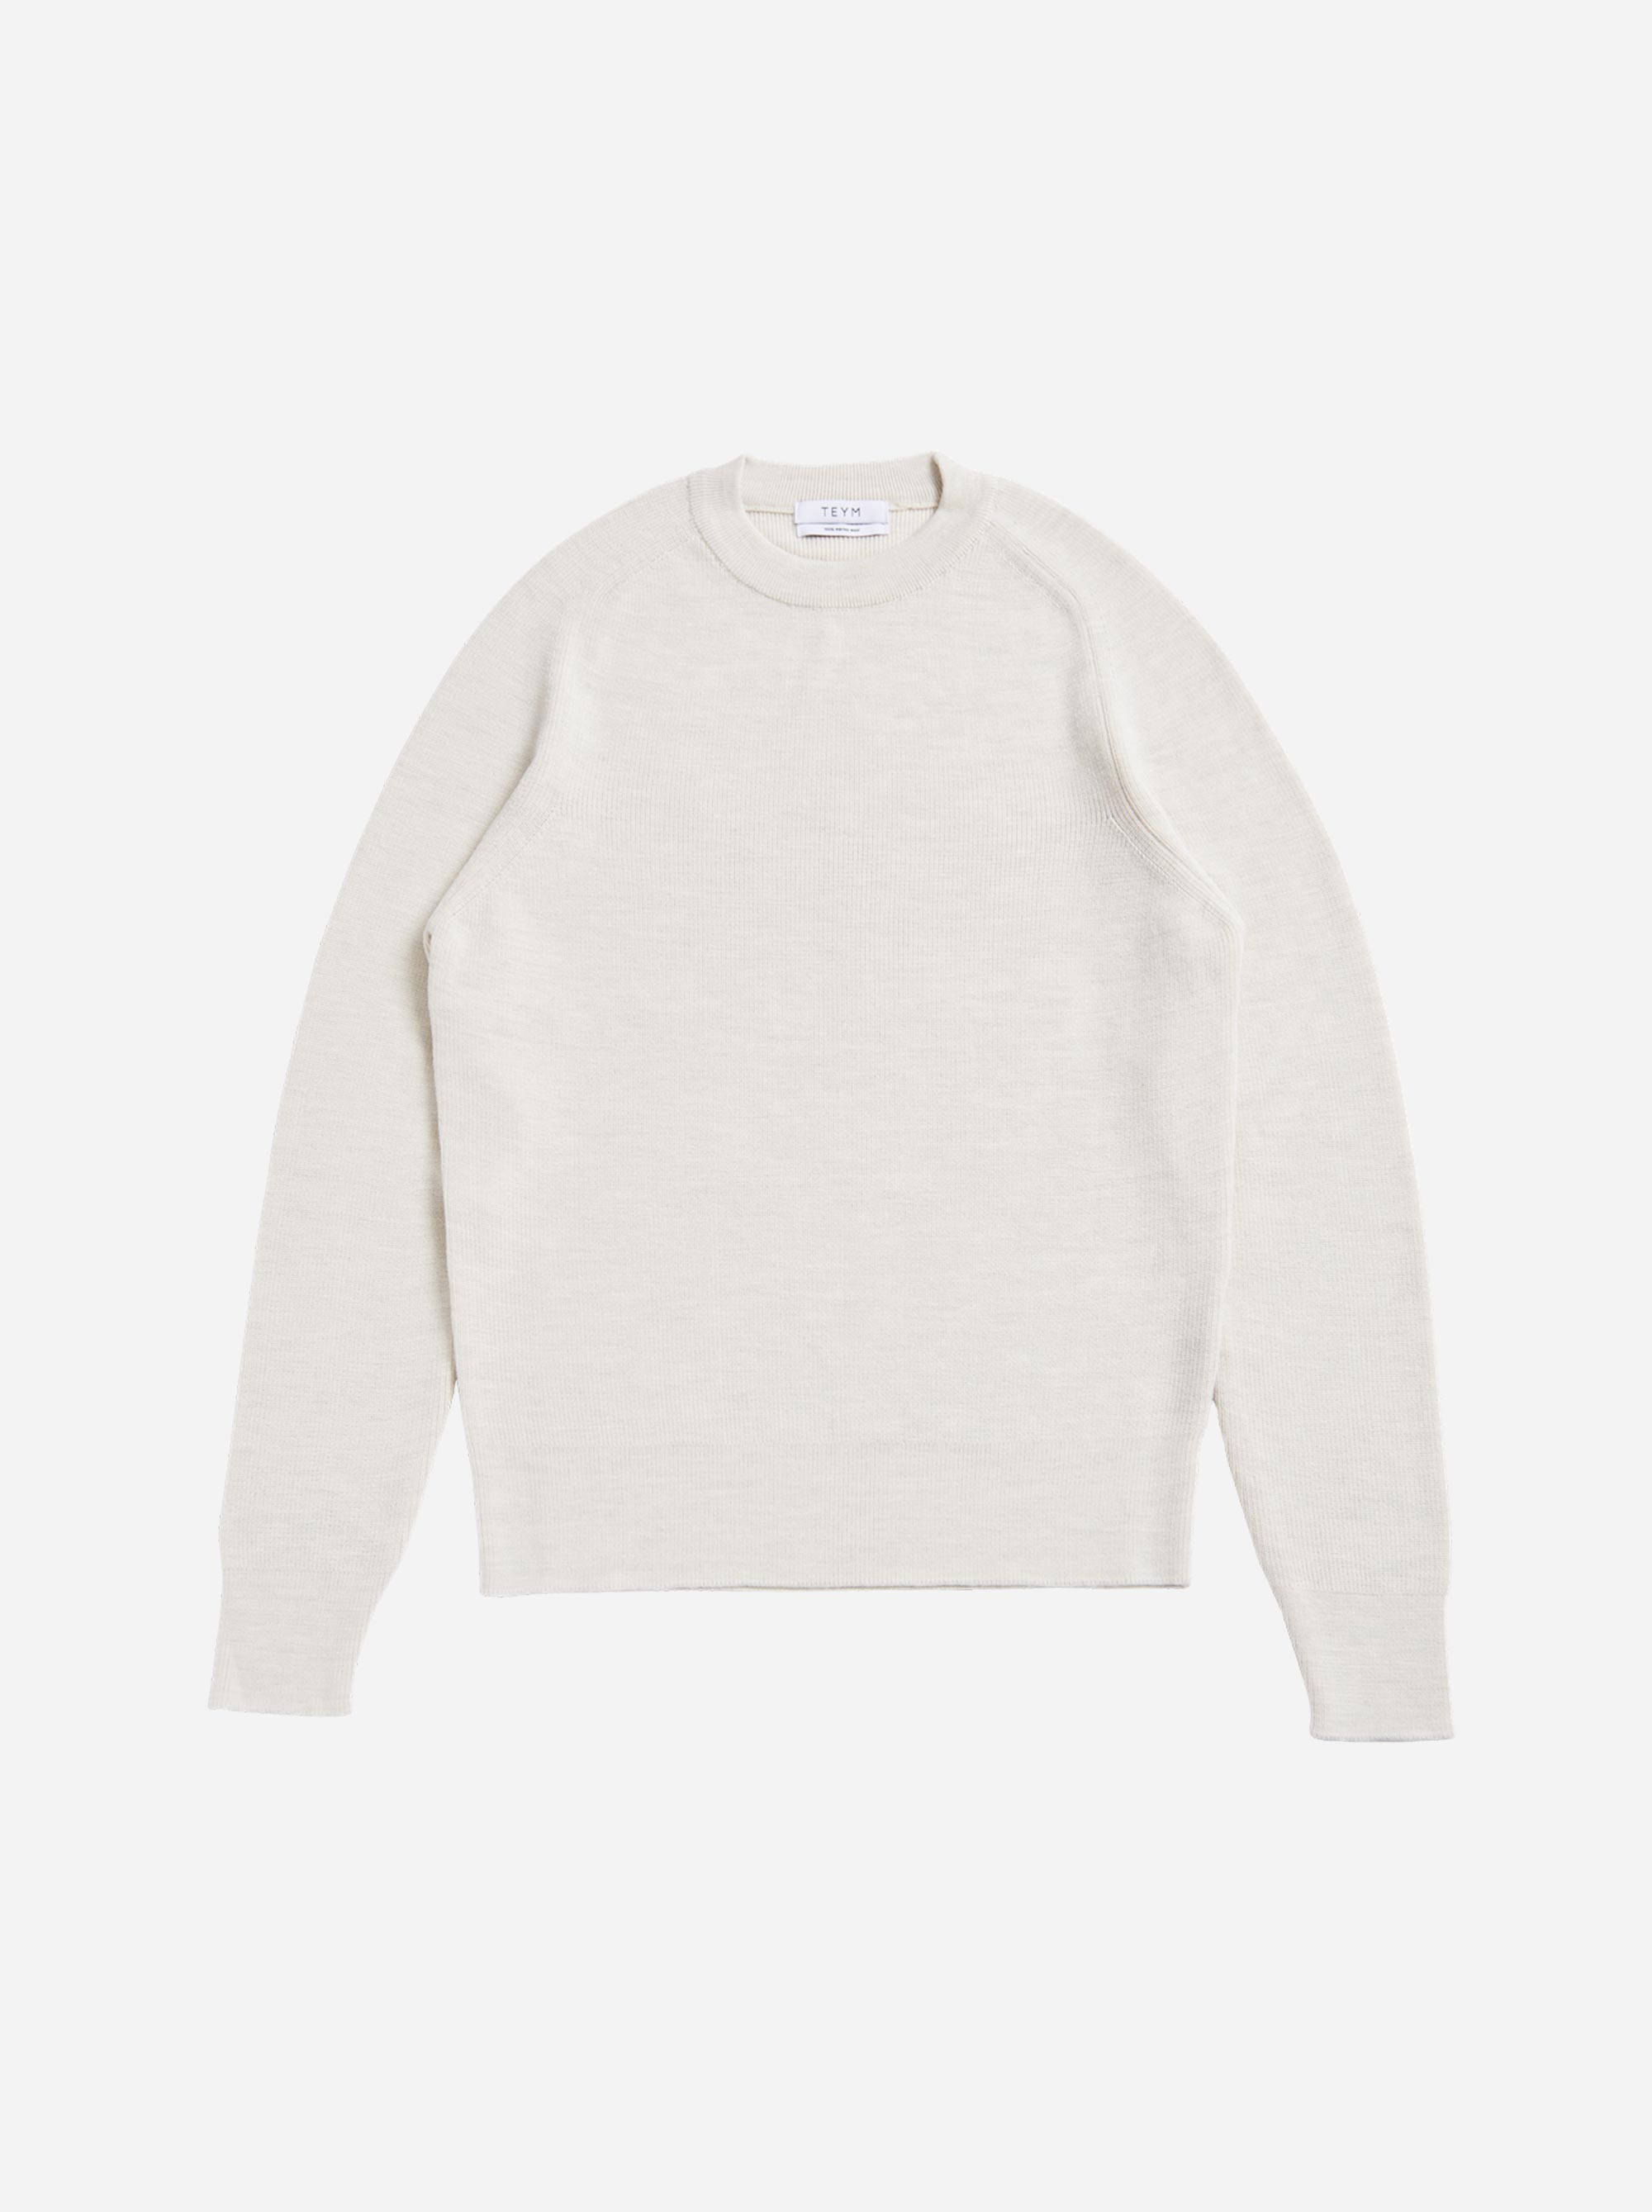 Teym - Crewneck - The Merino Sweater - Women - White - 5